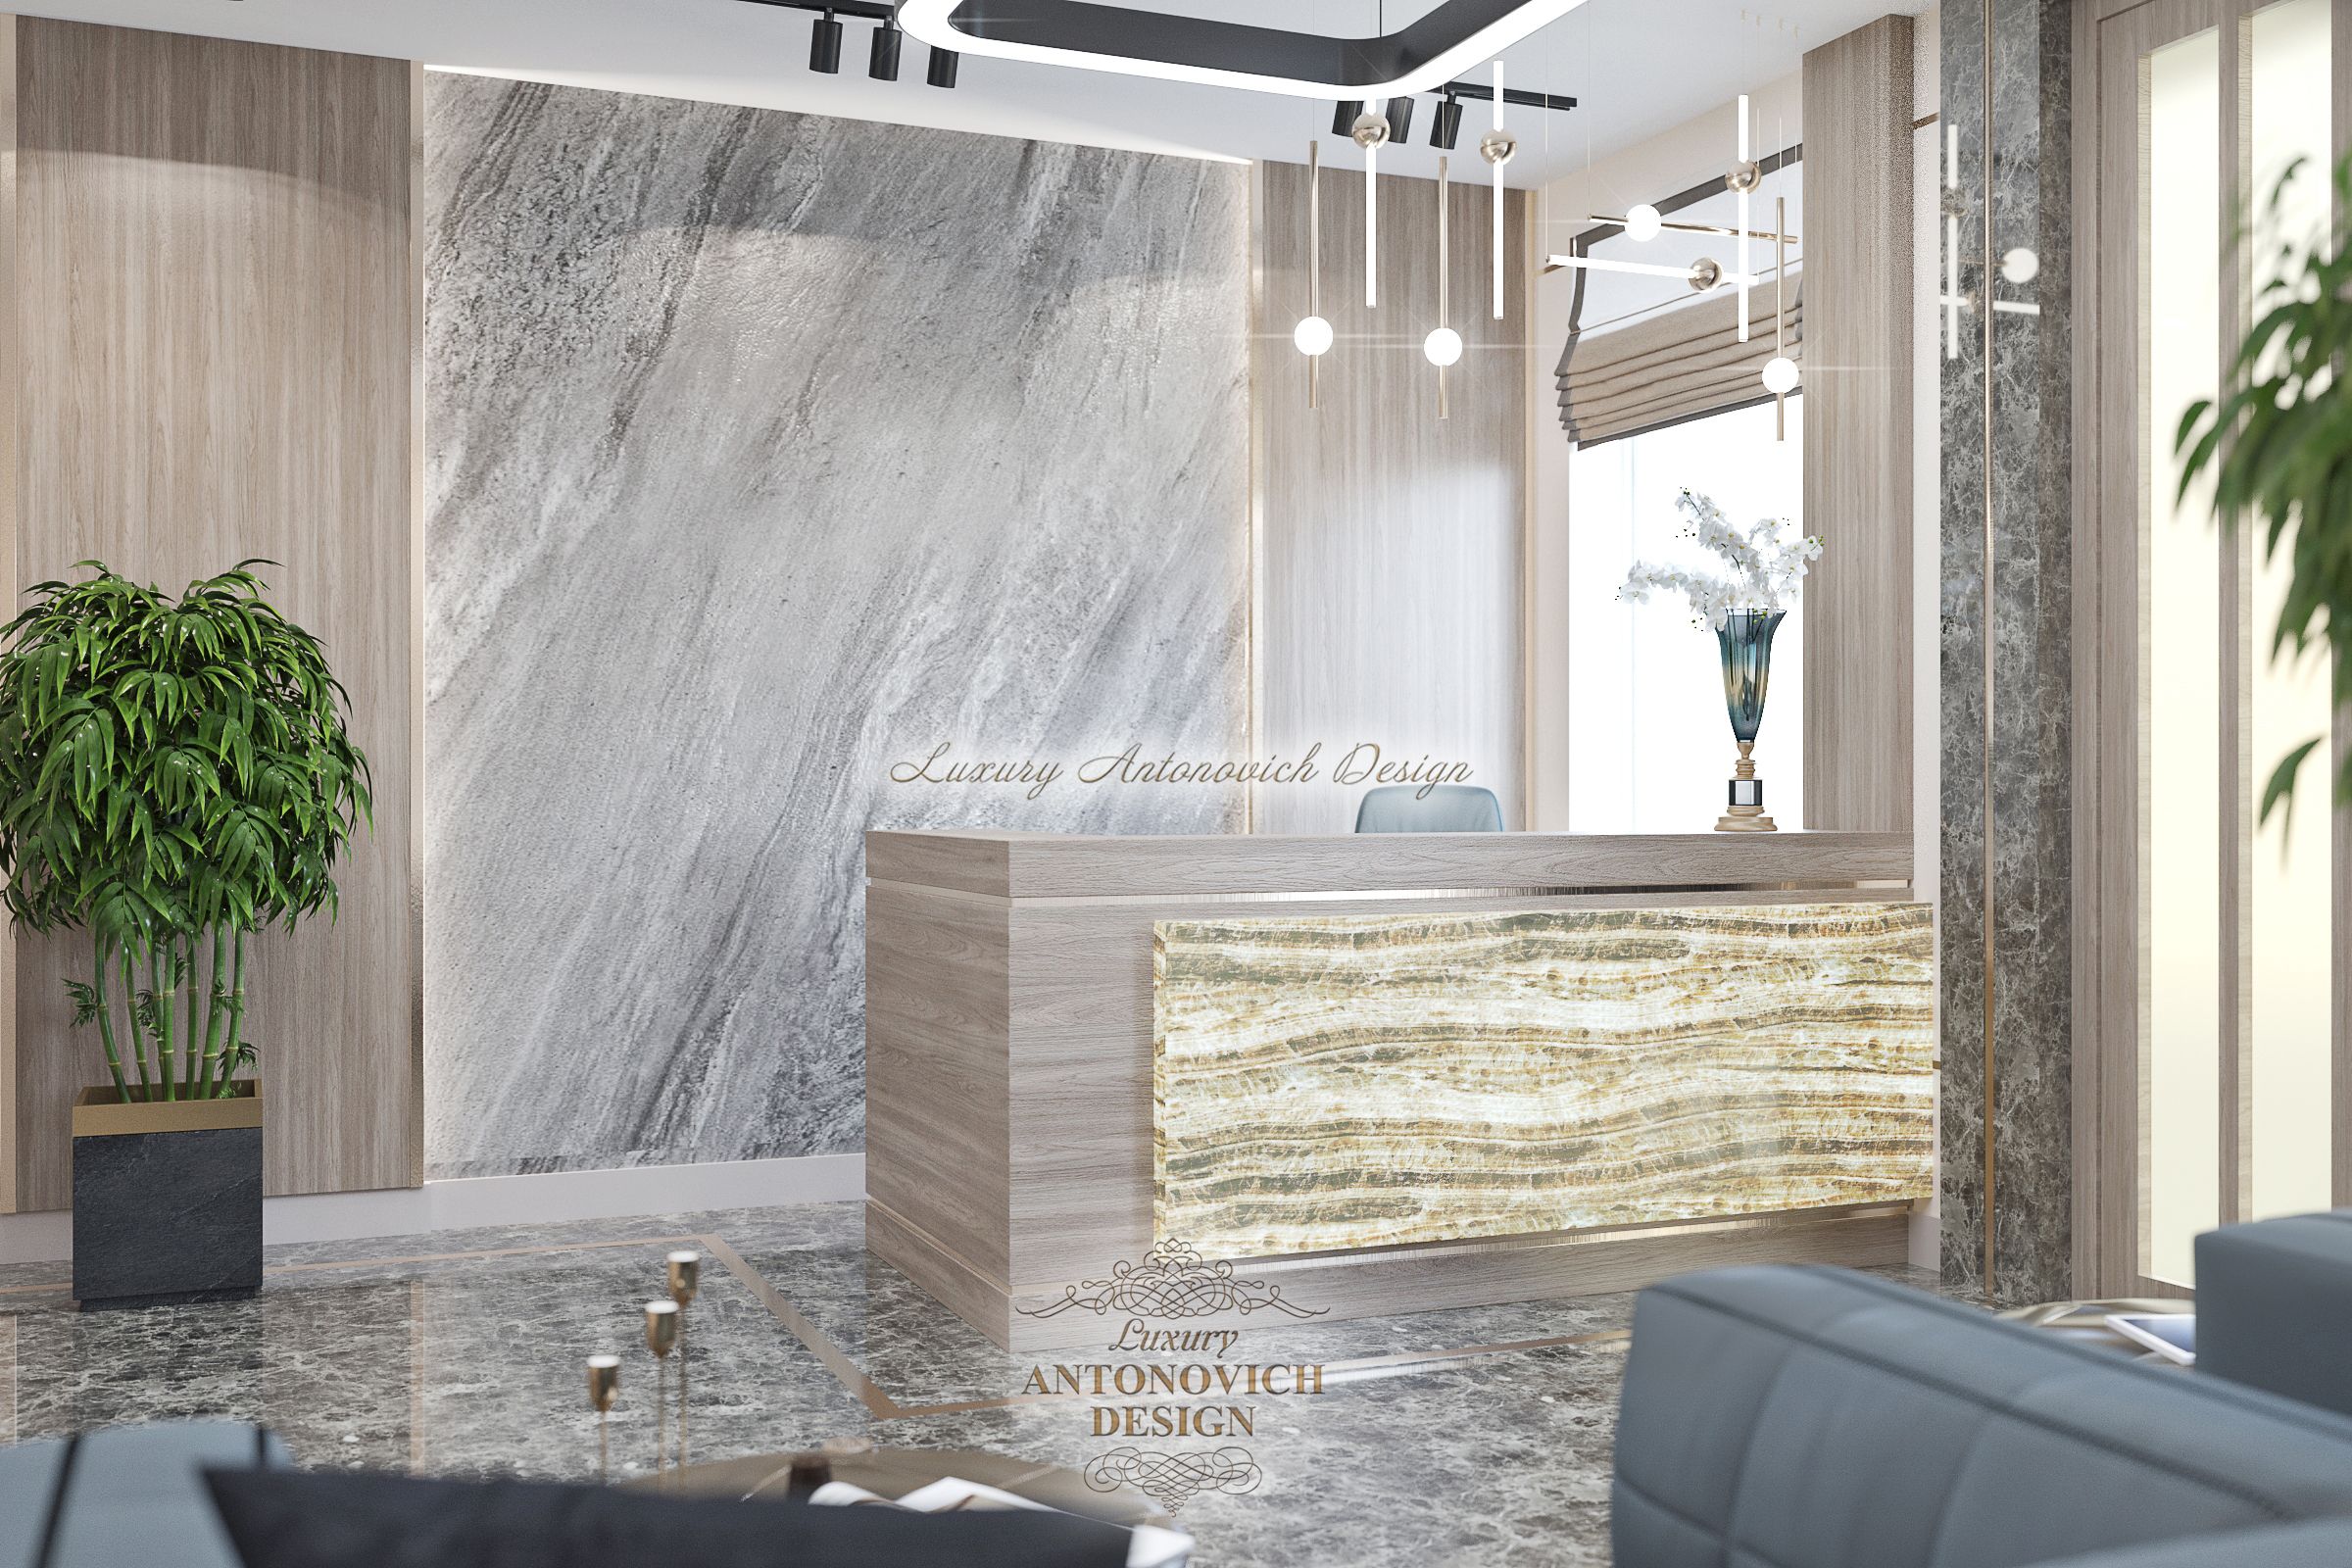 Стильный дизайн интерьера Холла офиса, Luxury Antonovich Design